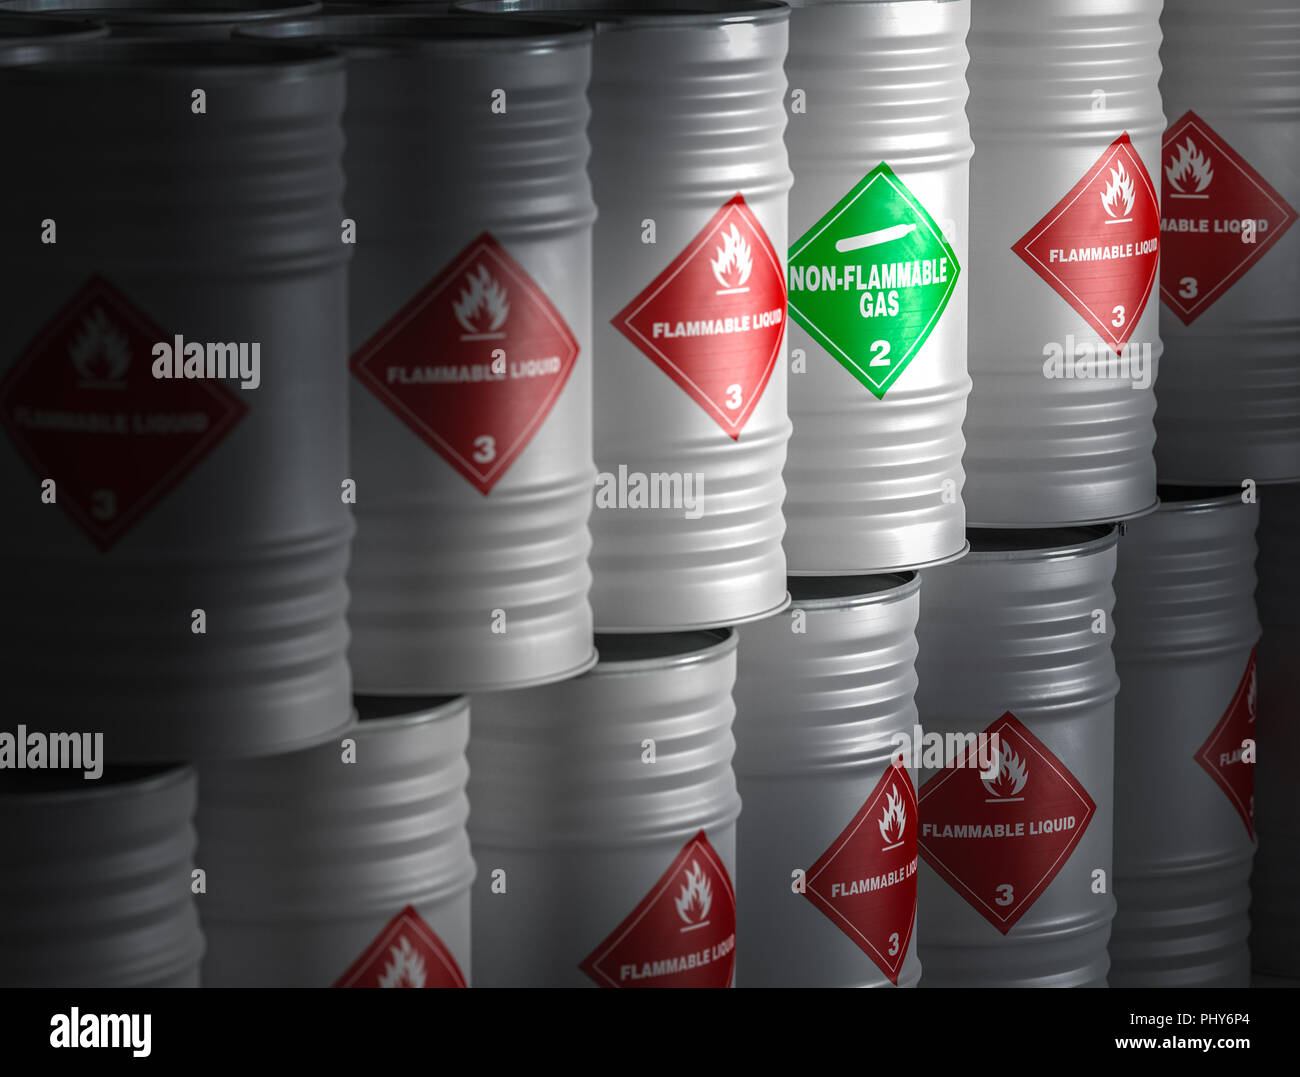 barrels of flammable liquid 3d rendering image Stock Photo